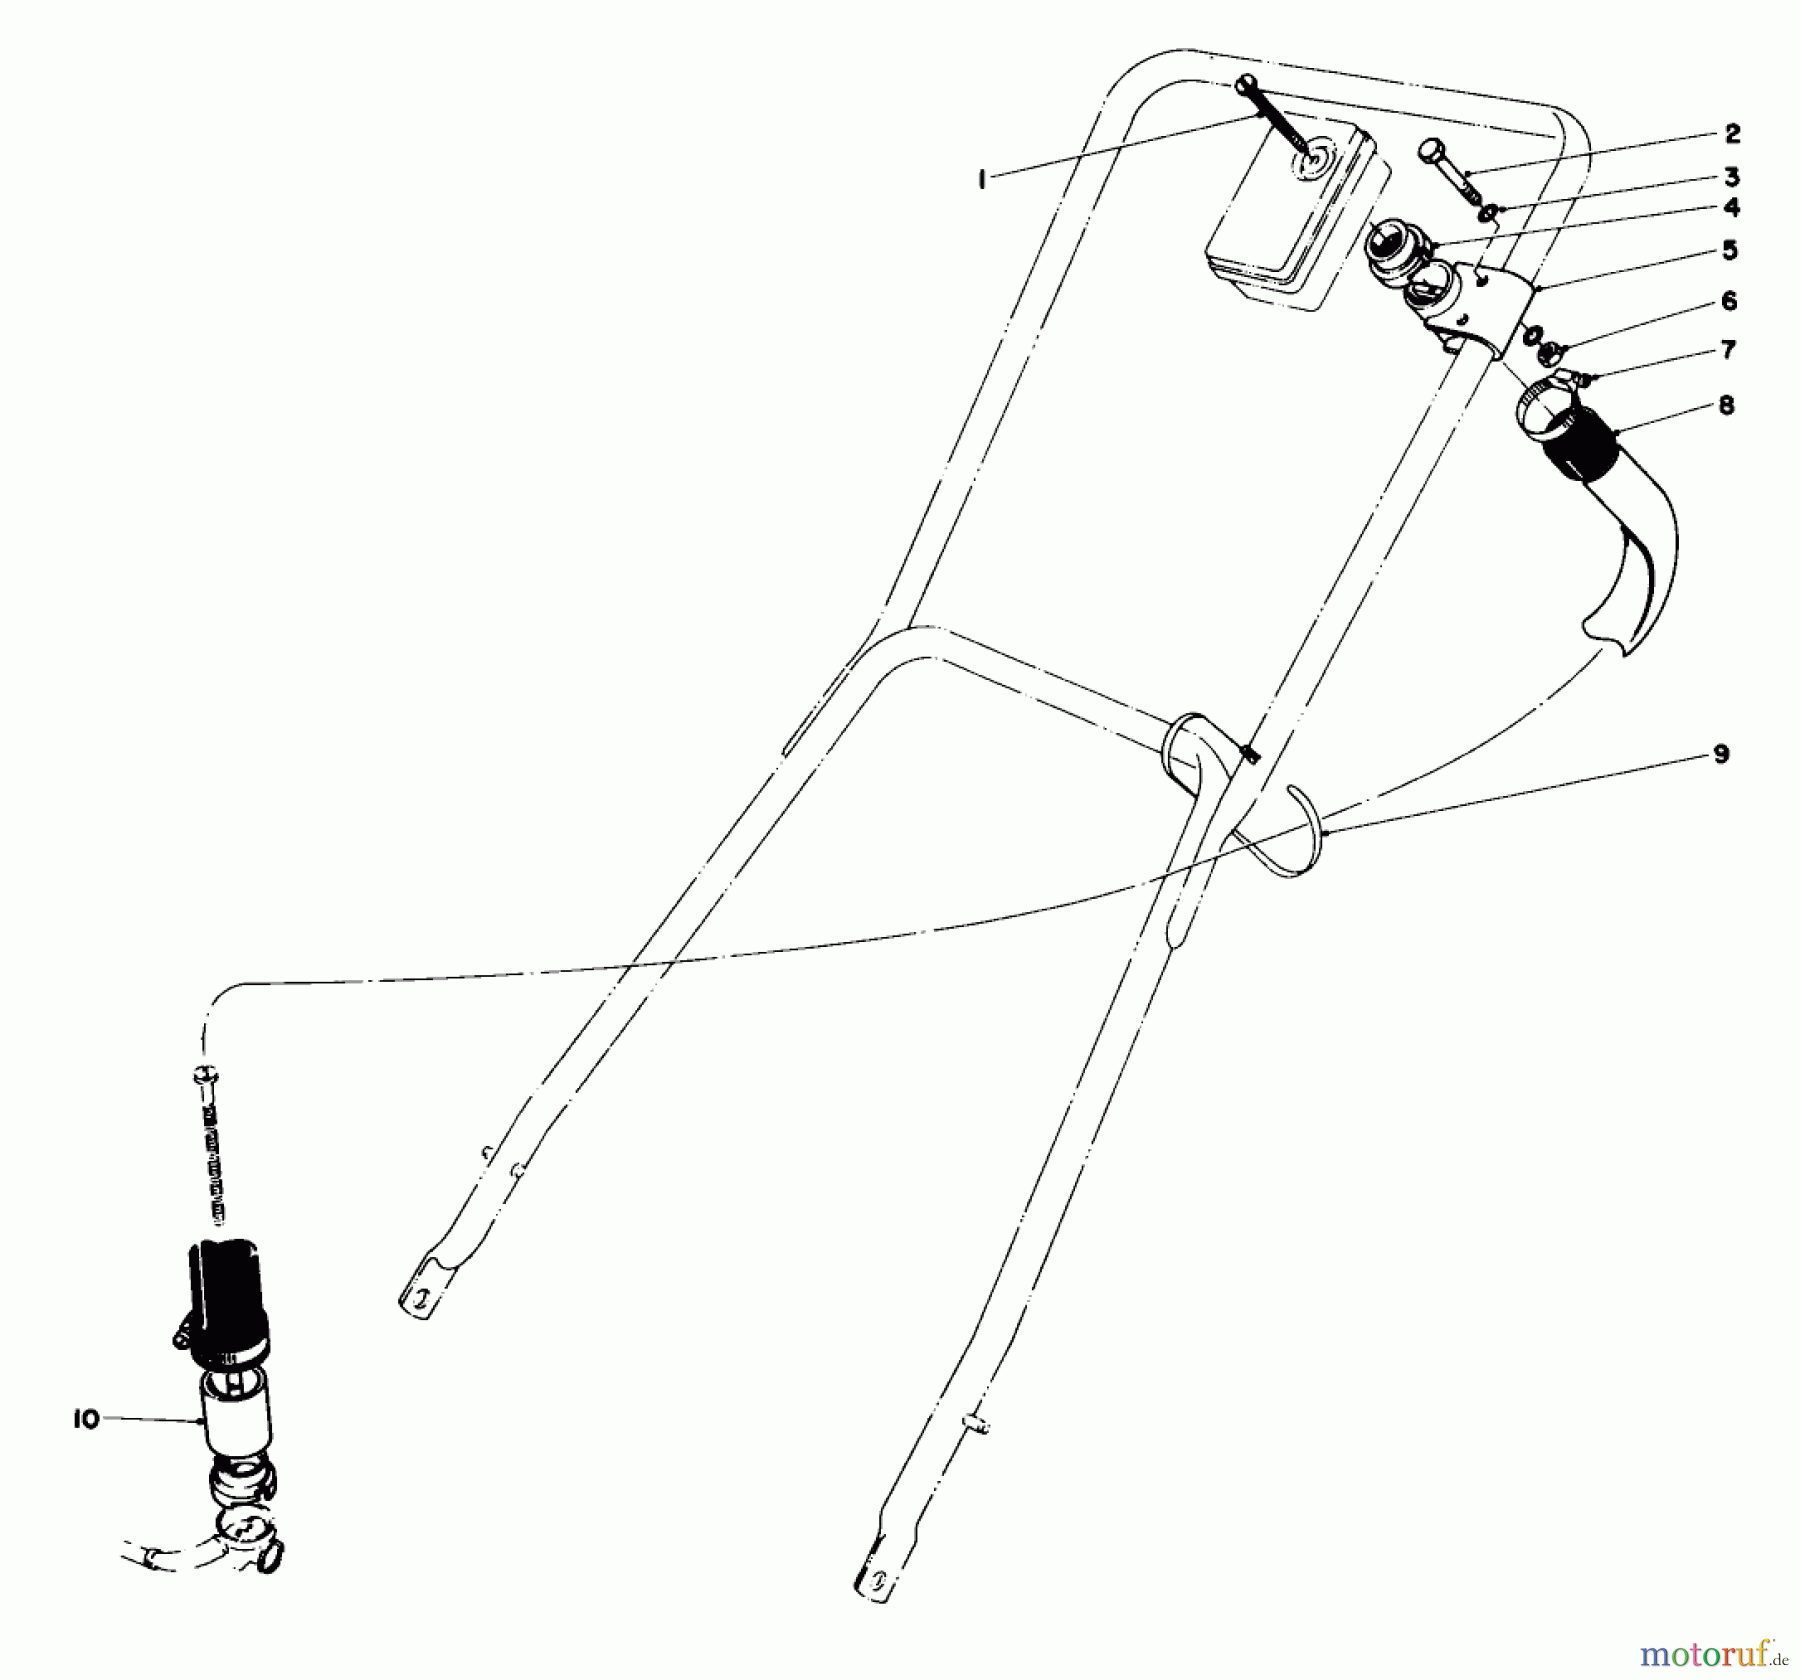  Toro Neu Mowers, Walk-Behind Seite 2 23177 - Toro Lawnmower, 1977 (7000001-7999999) REMOTE AIR CLEANER KIT NO. 28-0580